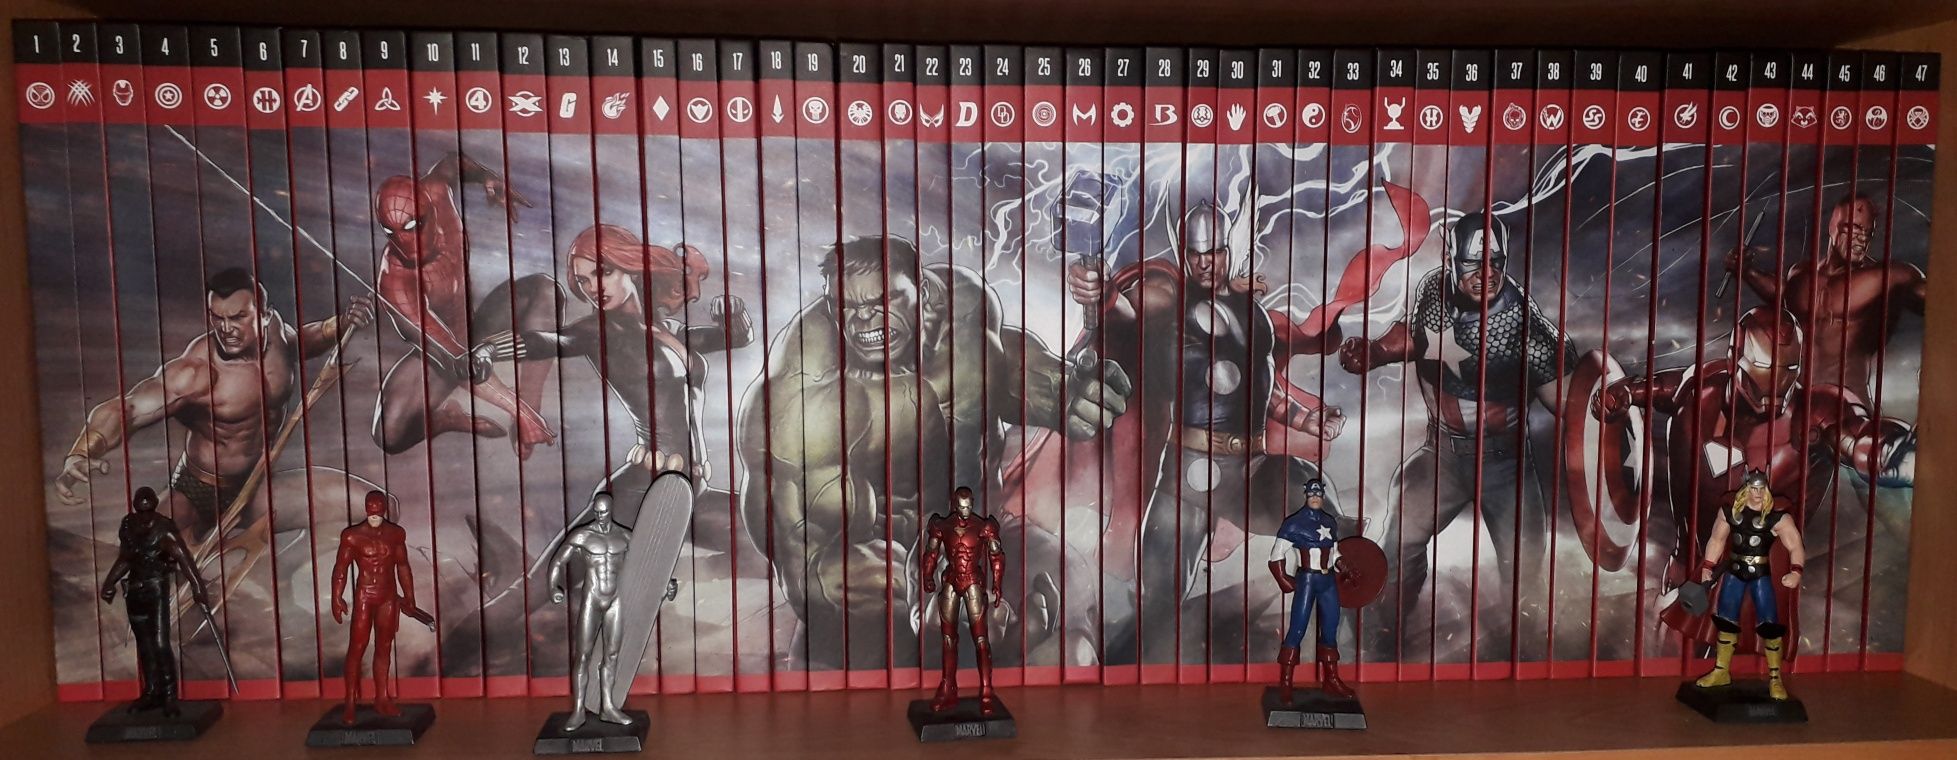 Wielka kolekcja komiksów Marvela